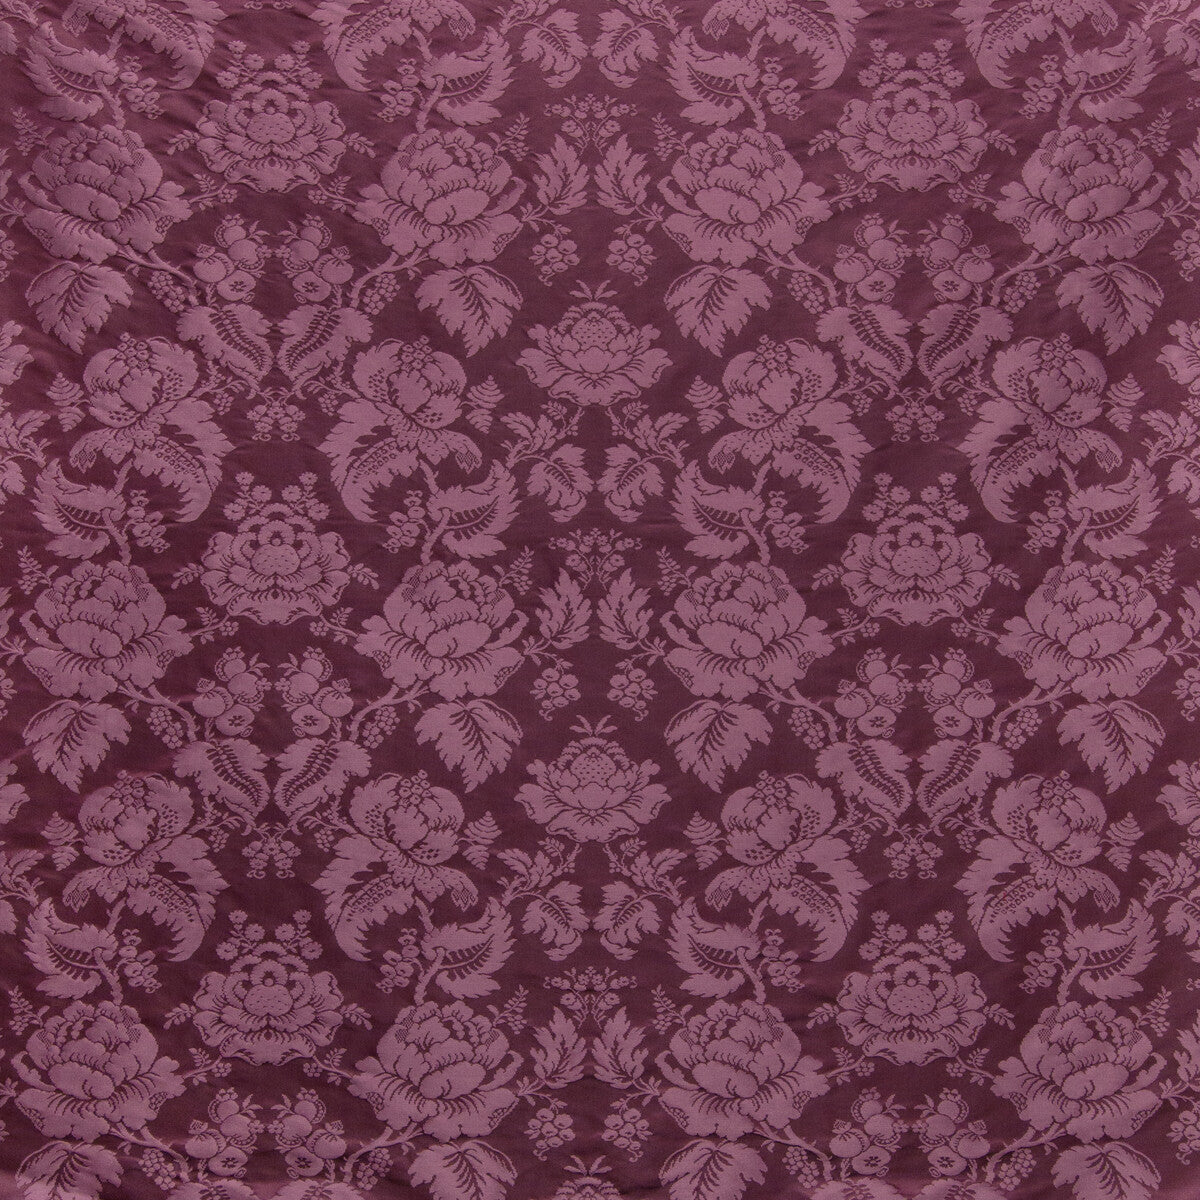 Moulins Damask fabric in eggplant color - pattern BR-81035.909.0 - by Brunschwig &amp; Fils